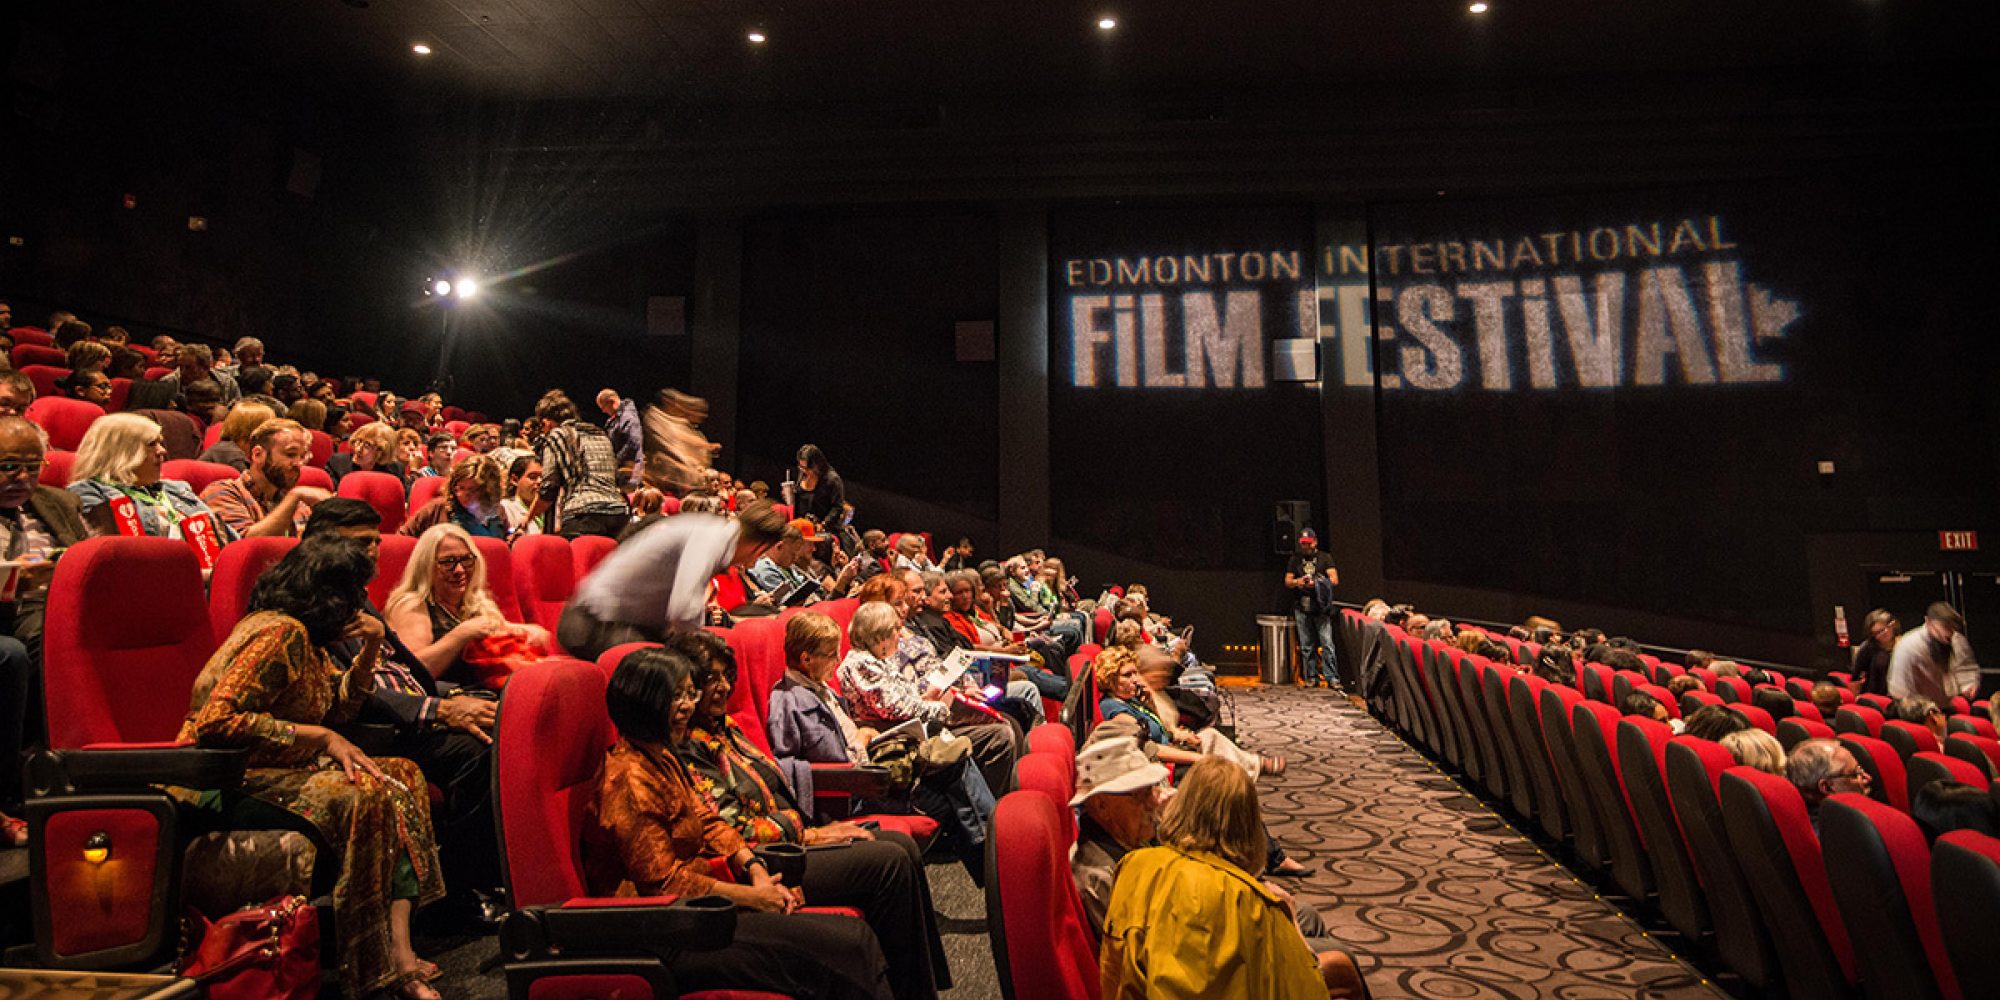 Edmonton International Film Festival Explore Edmonton